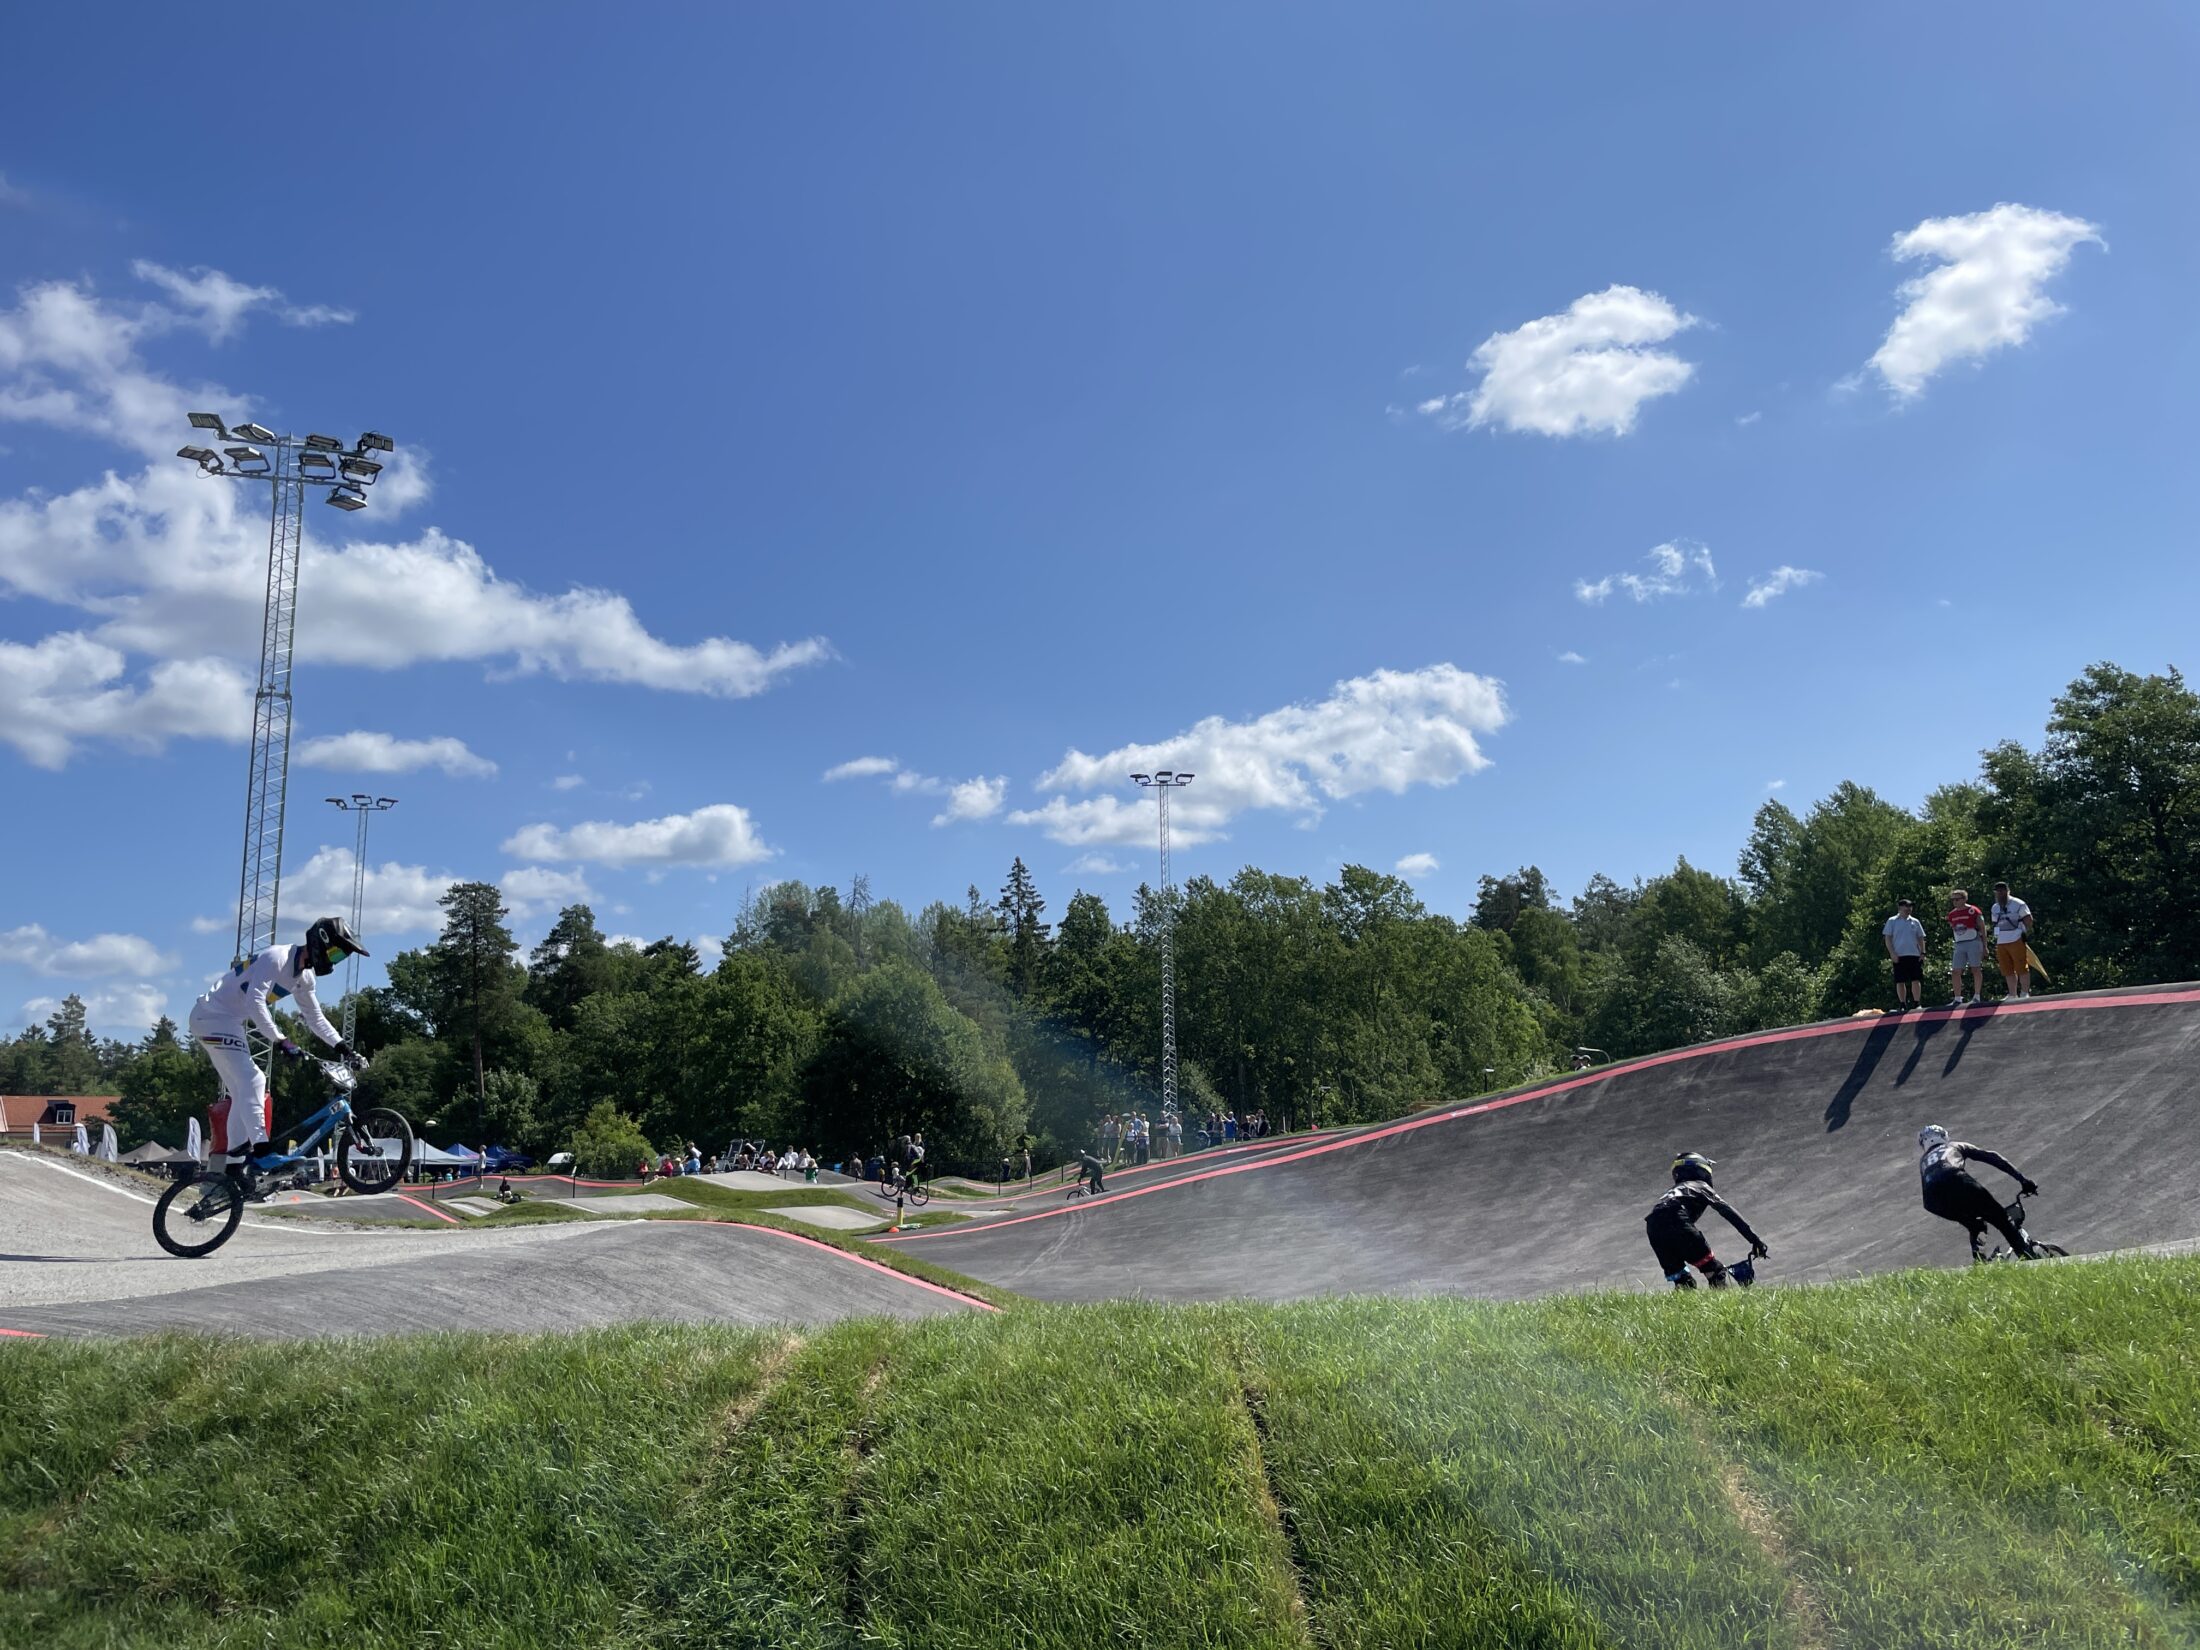 BMX-arena Hökarängen. Nyréns landskapsarkitekter